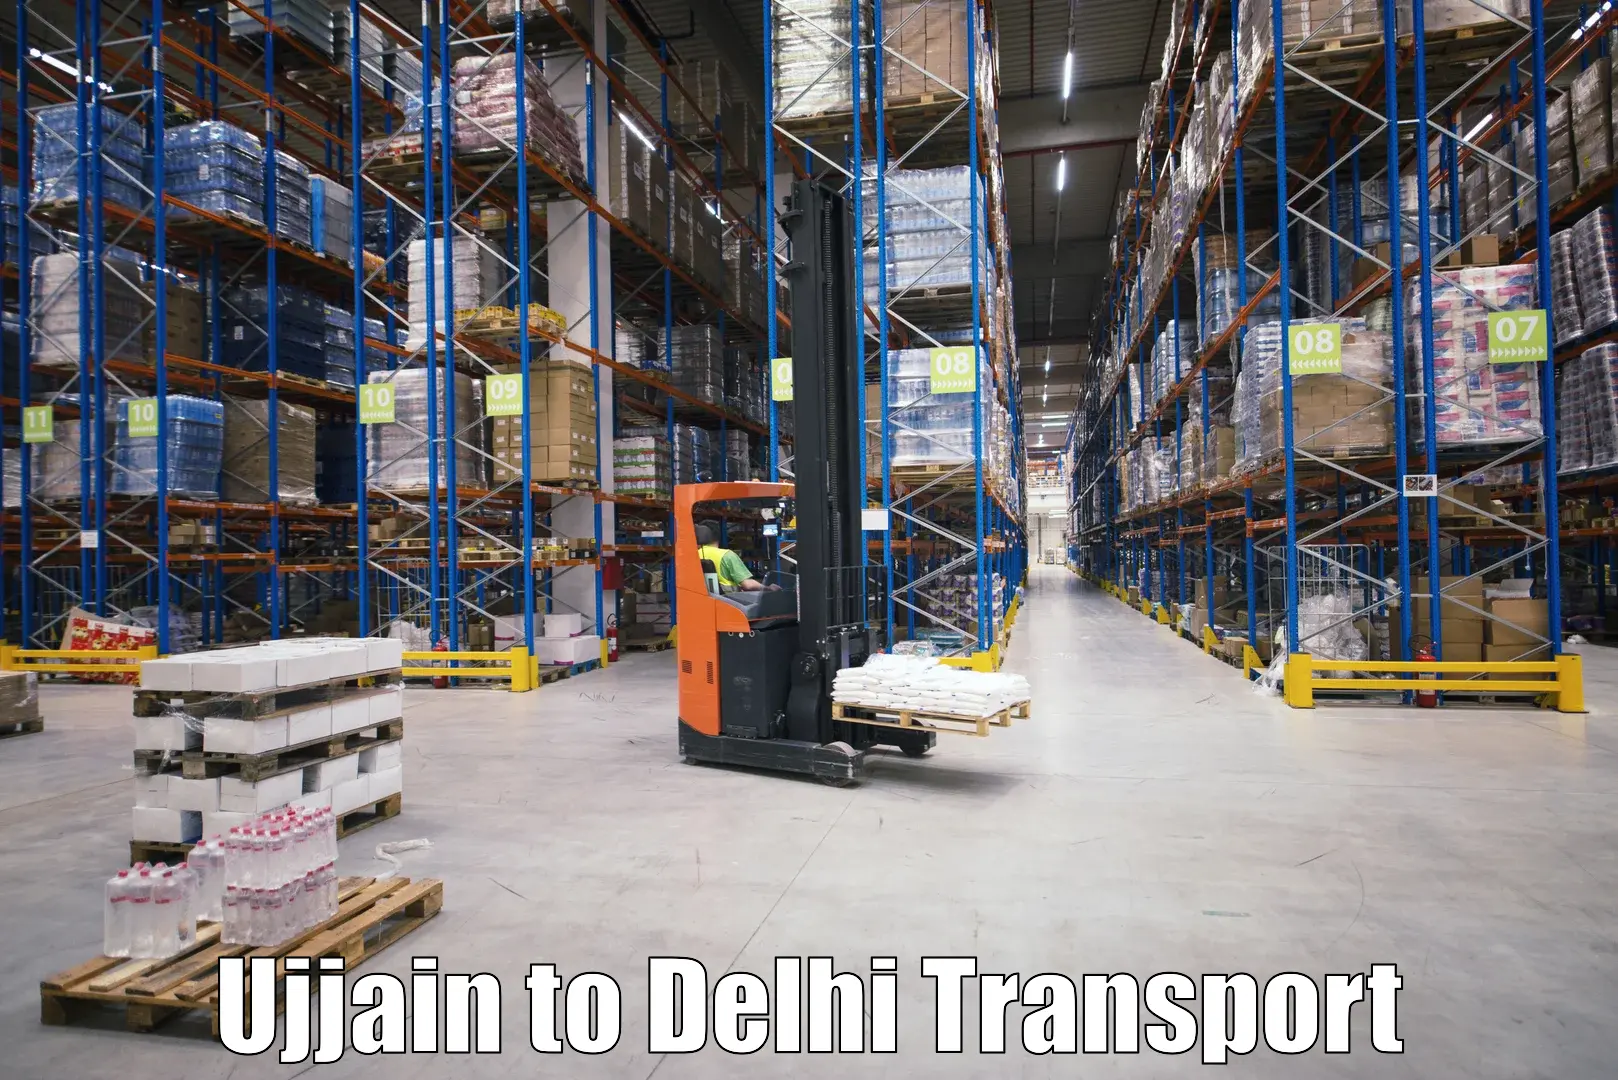 Online transport service Ujjain to IIT Delhi